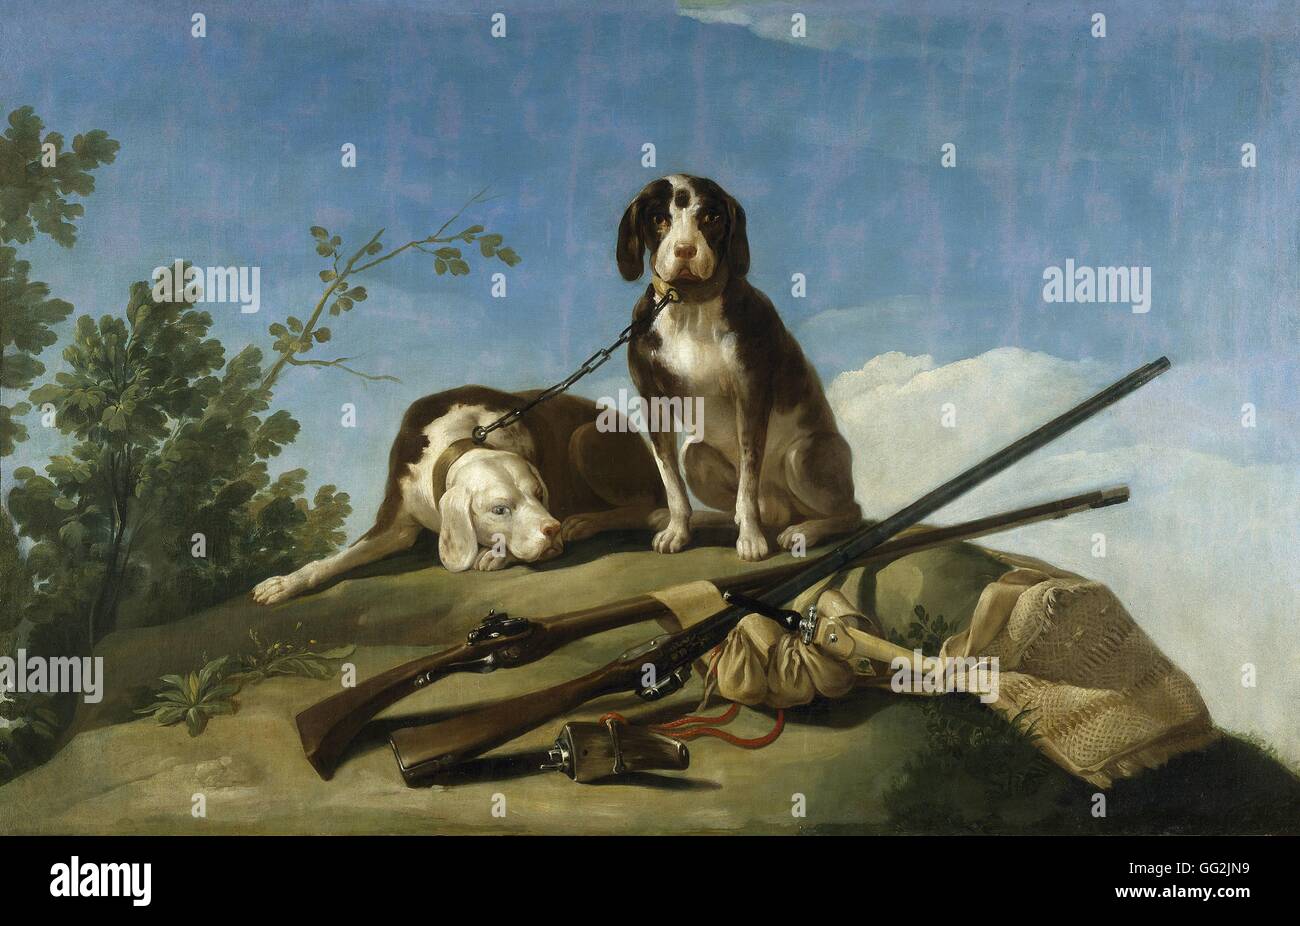 Francisco de Goya y Lucientes Escuela Española de perros con una correa Perros en trailla 1775 Óleo sobre lienzo (112 x 174 cm) para tapiz modelo Madrid, Museo del Prado Foto de stock